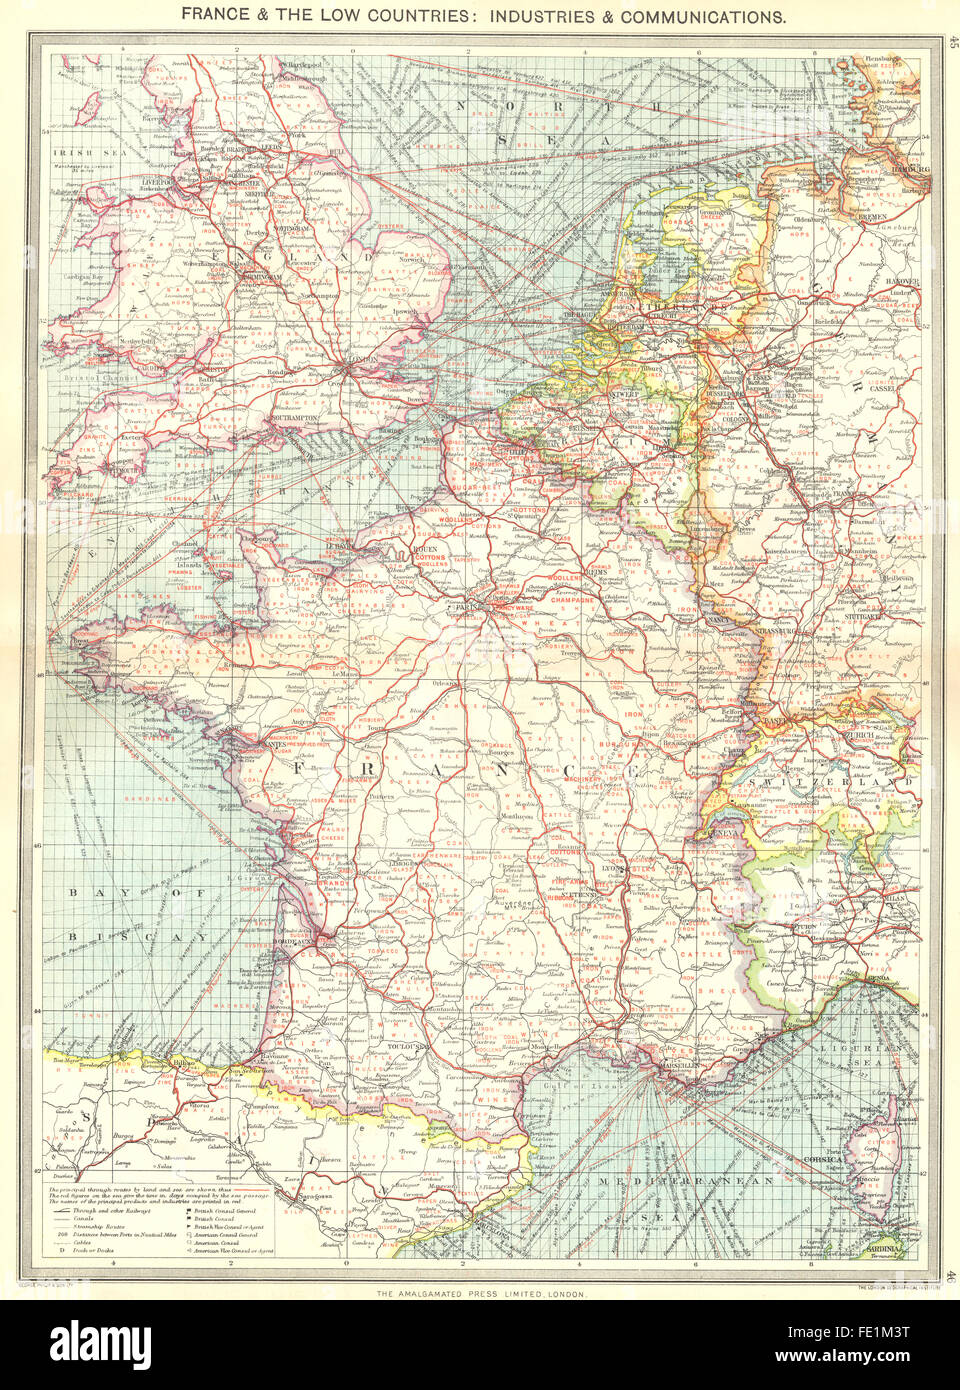 Frankreich: & niedrige Länder: Branchen & Kommunikation, 1907 Antike Landkarte Stockfoto